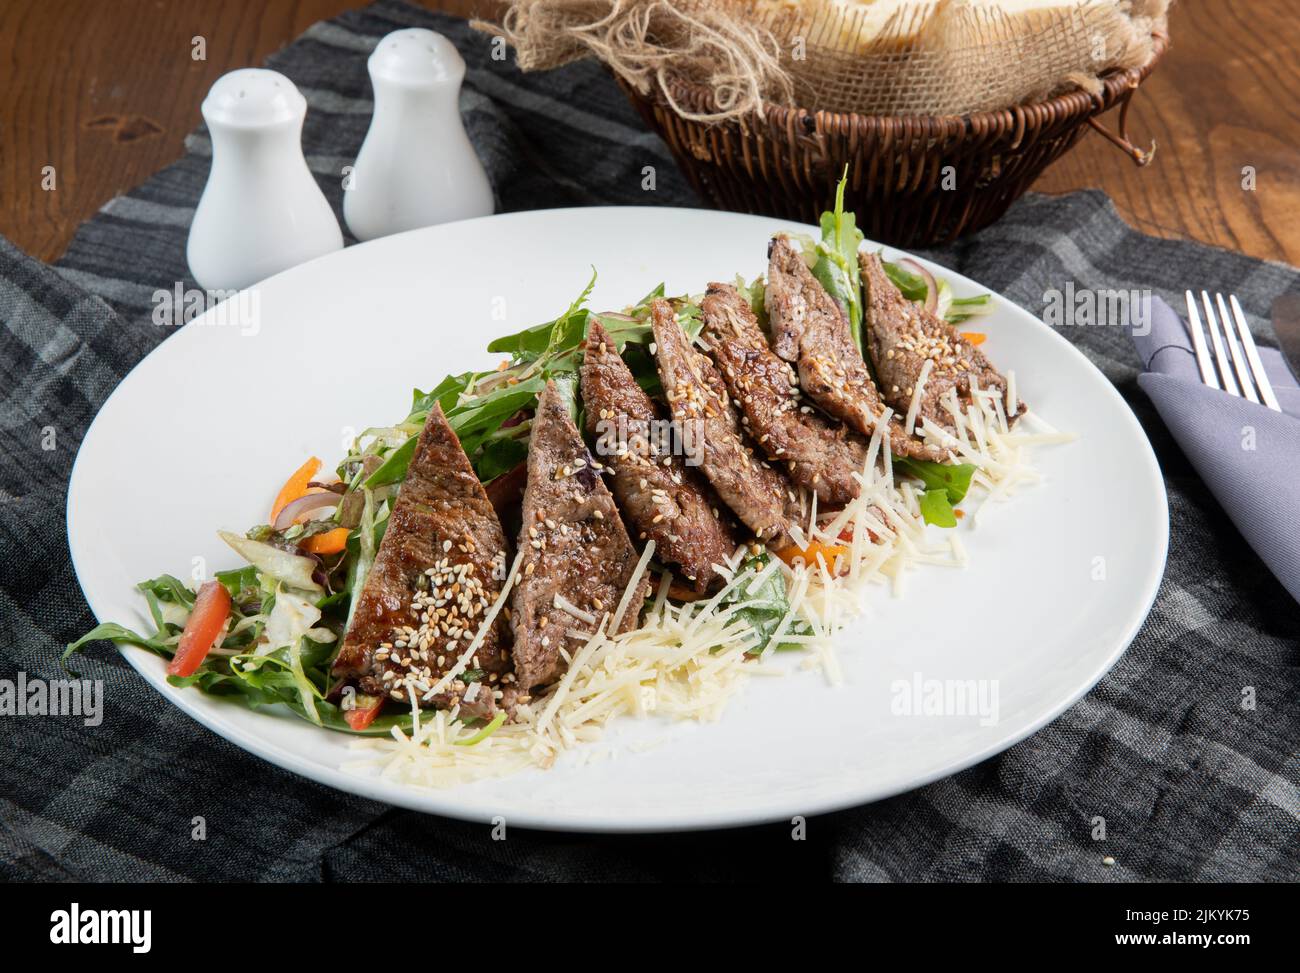 Ein leckeres Gericht, das mit Fleisch und Gemüse gekocht wird und auf einem weißen Teller auf einem Tisch serviert wird Stockfoto